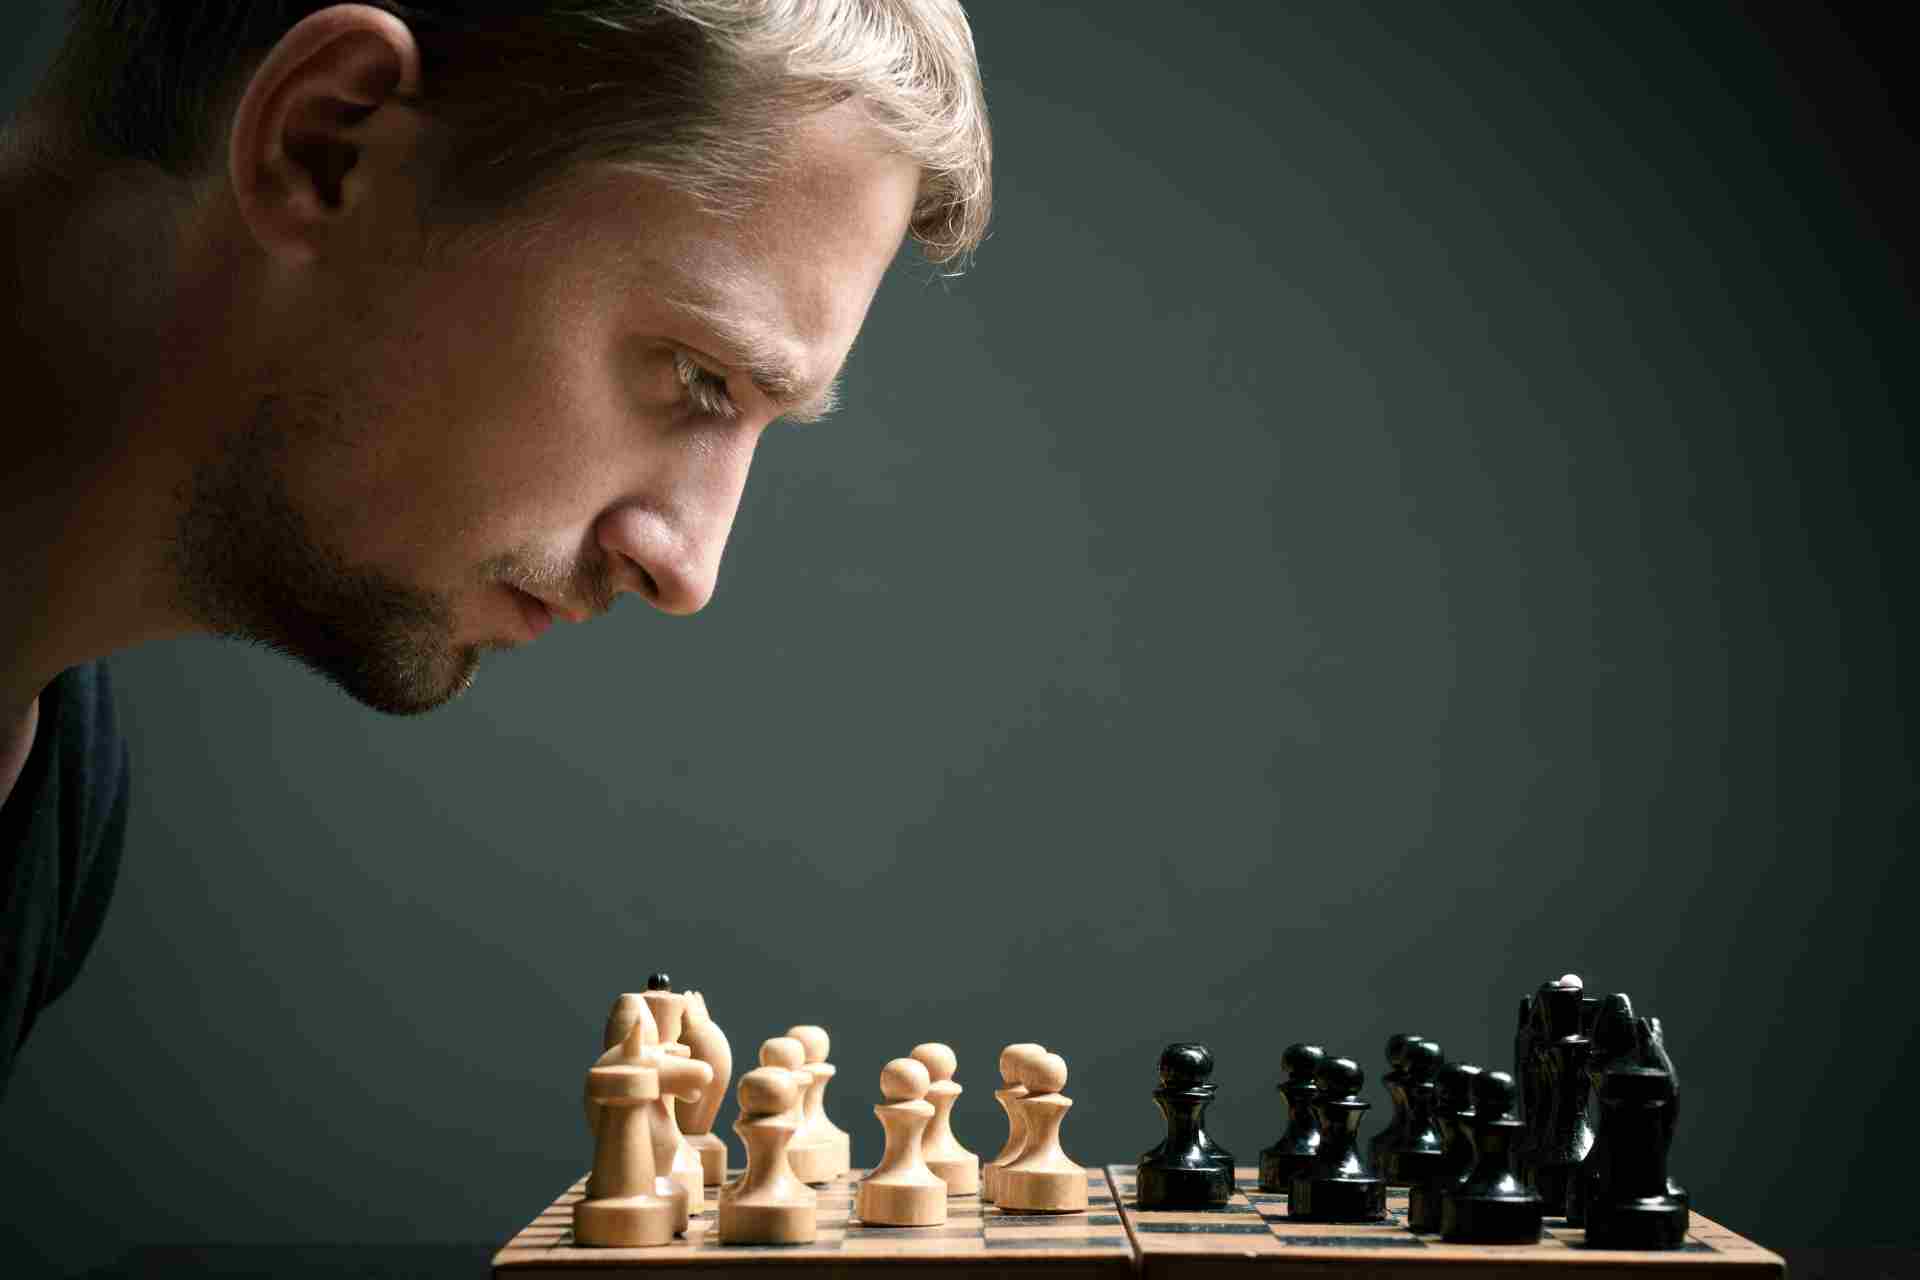 Ребята шахматы играют. Шахматист думает. Шахматы люди. Шахматист задумался.